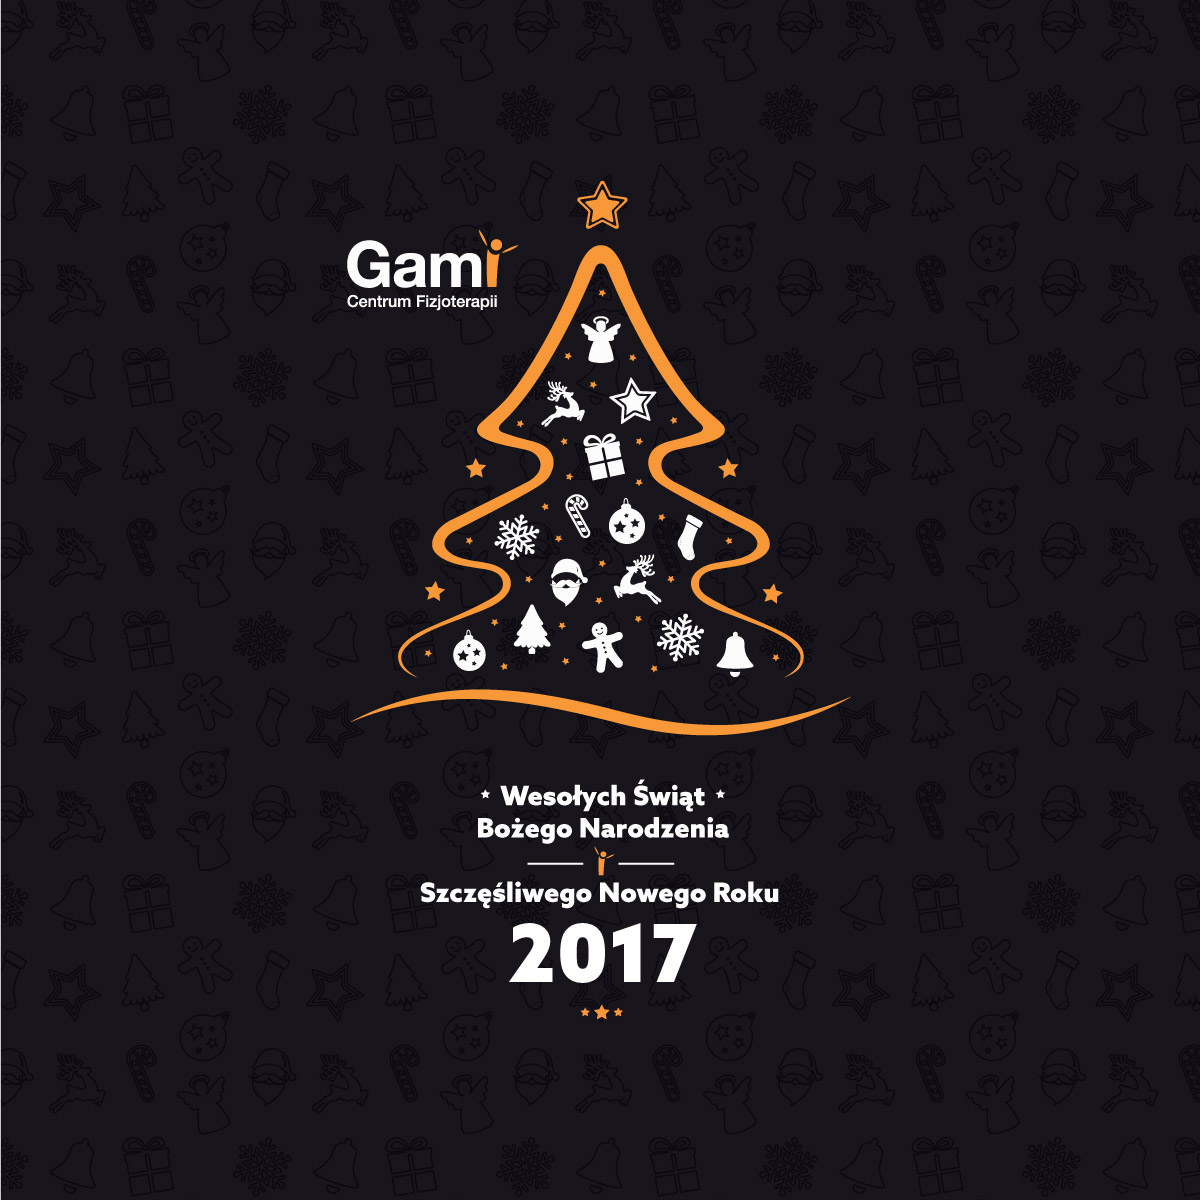 gami-zyczenia-2017